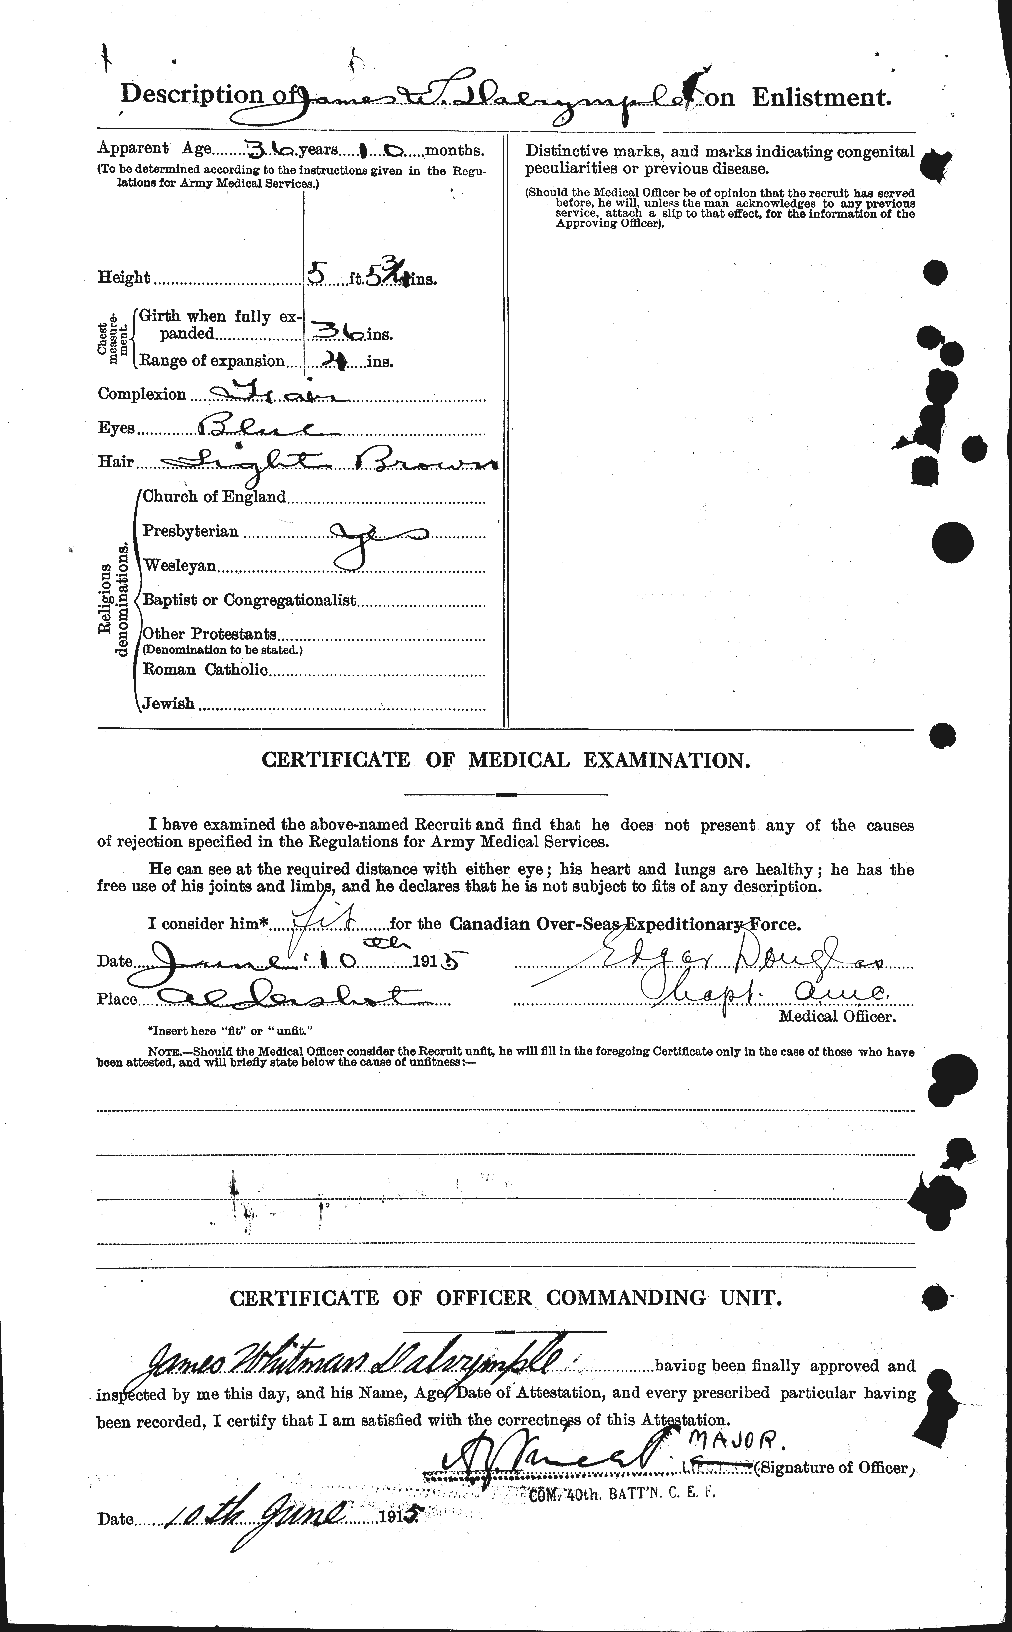 Dossiers du Personnel de la Première Guerre mondiale - CEC 277632b